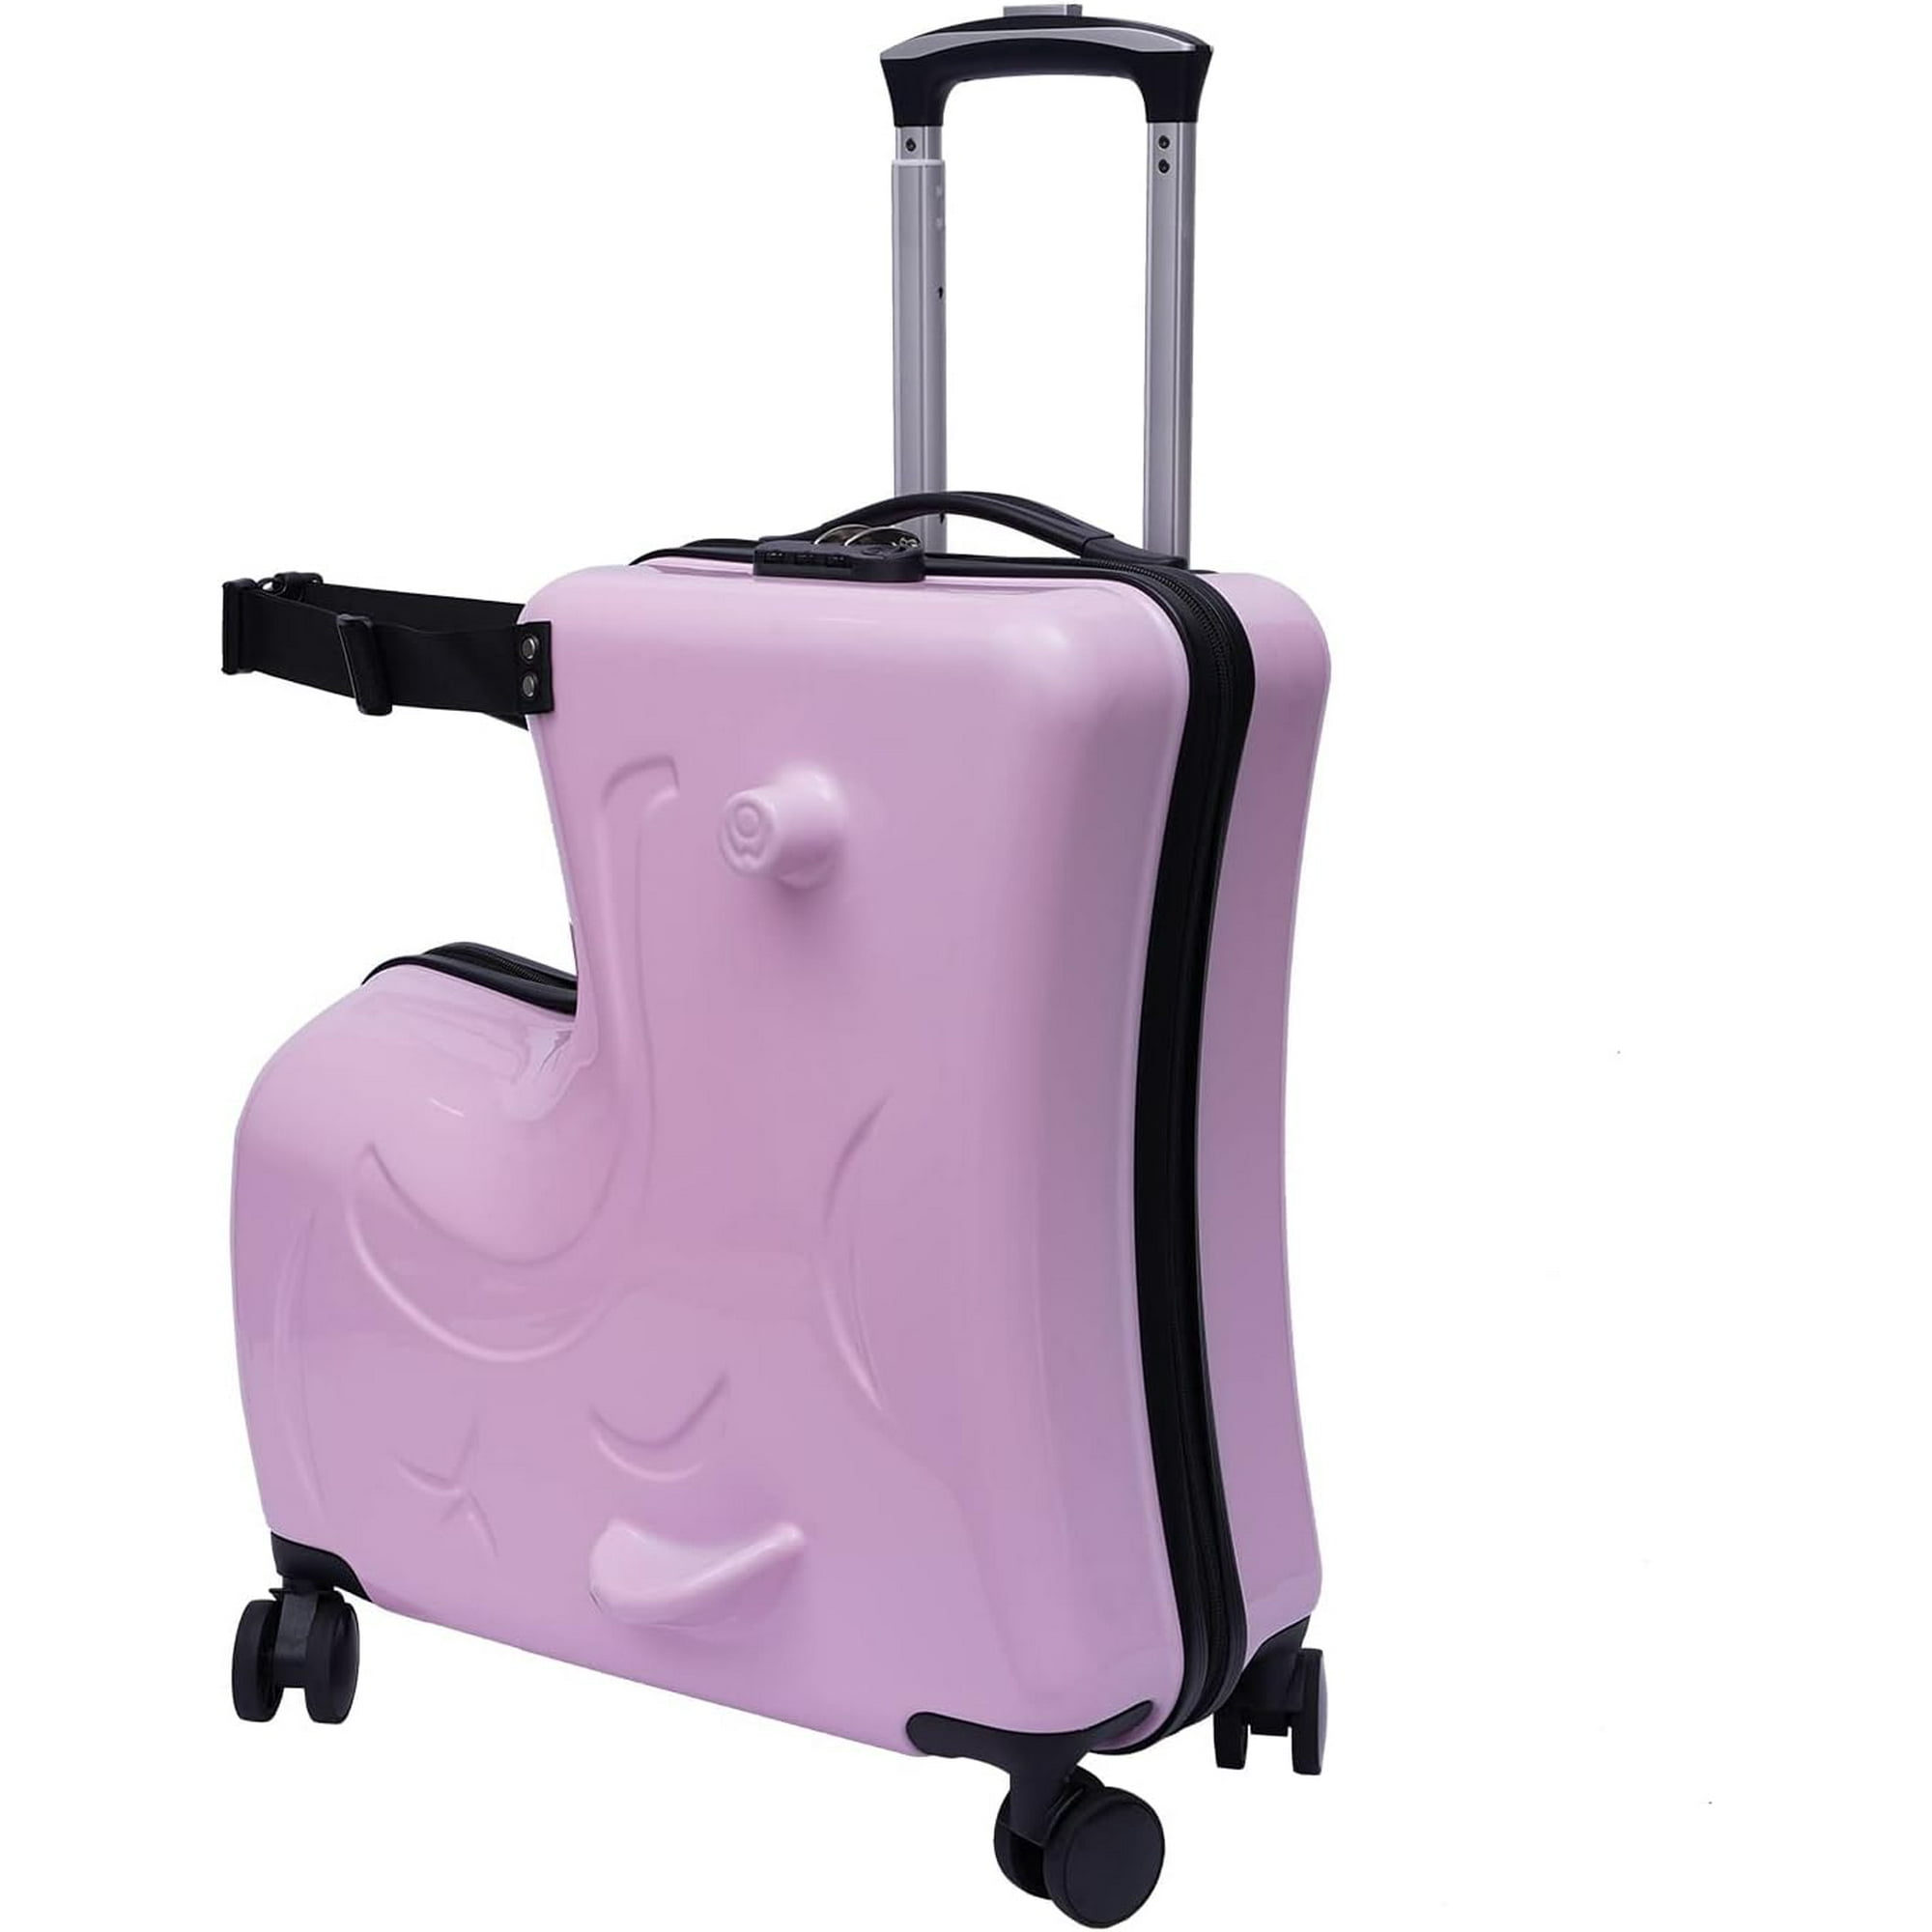 OUKANING 20 kids Luggage Travel Ride-on Suitcase Luggage